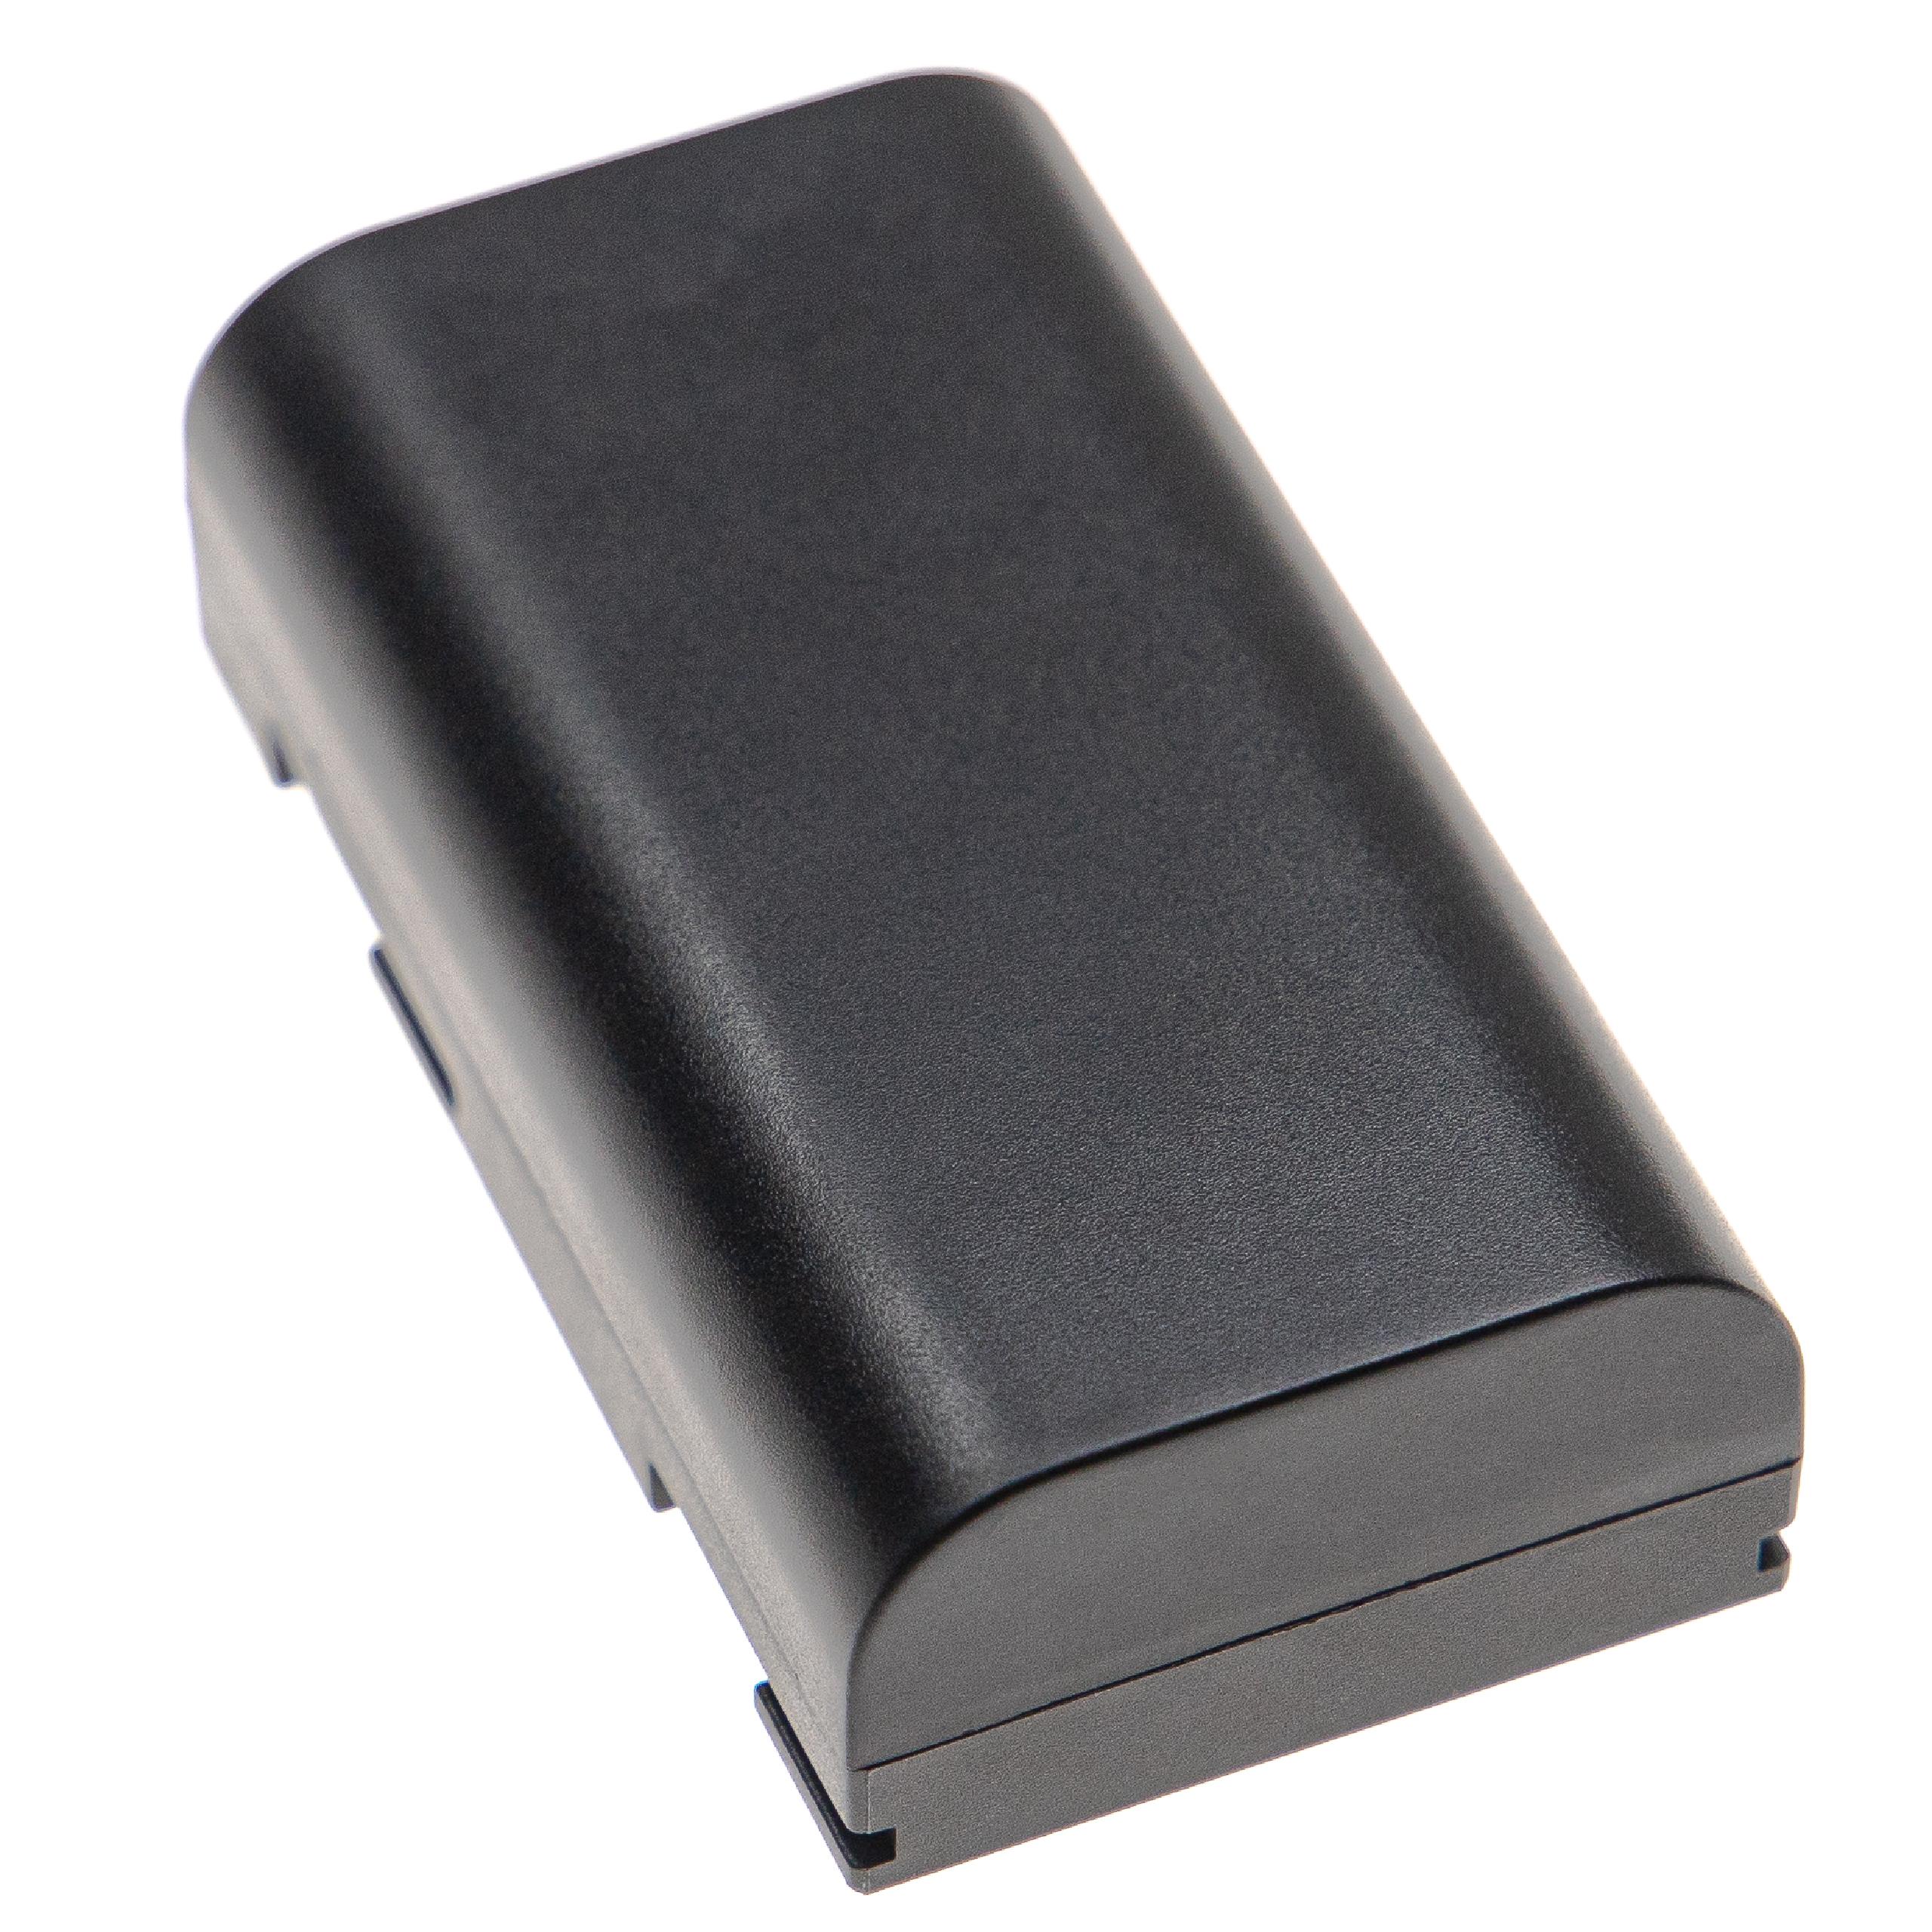 Batteria per dispositivo di misurazione sostituisce Ridgid 990596, 990514 Ridgid - 5200mAh 3,7V Li-Ion